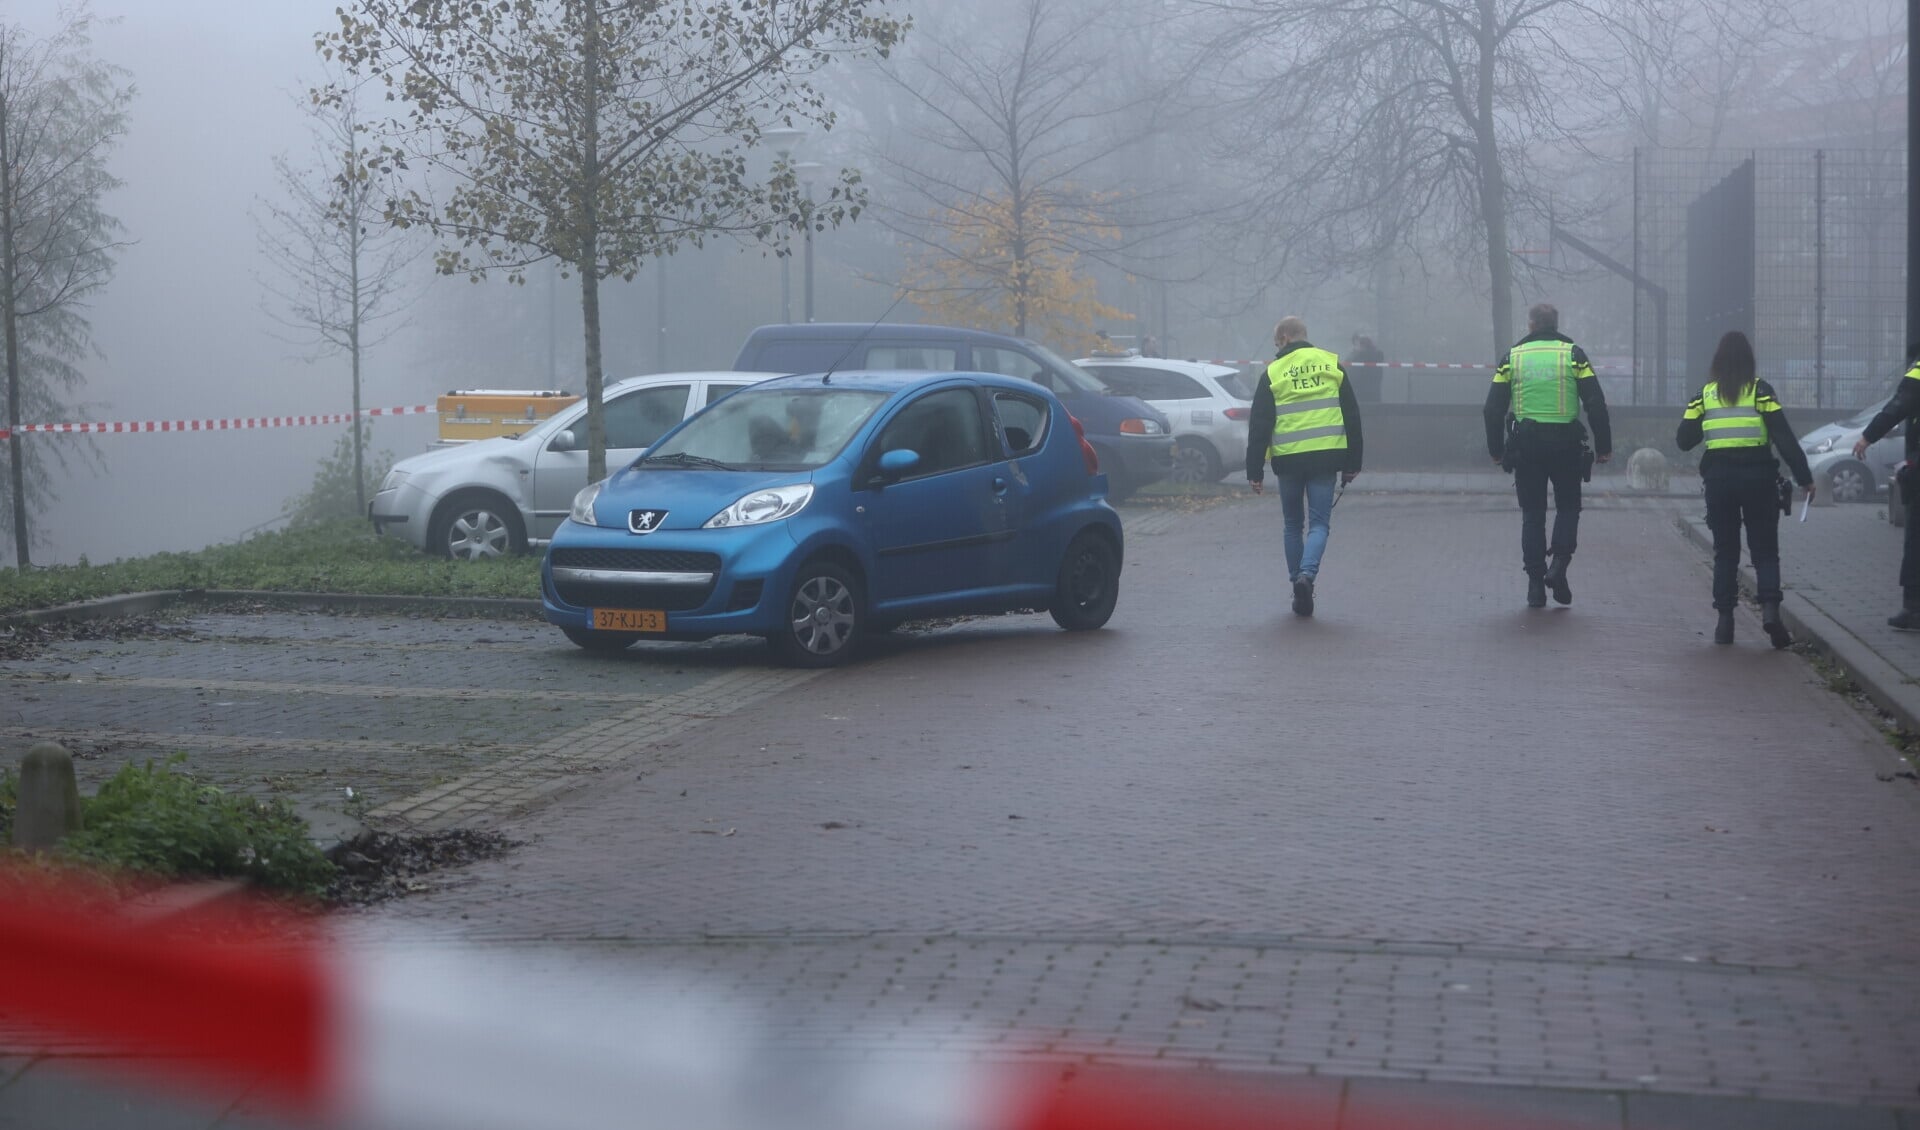 Vanmorgen rond 08.00 uur heeft er een explosie plaatsgevonden aan de Acaciasingel in Den Bosch. Daarbij raakte een auto beschadigd. 